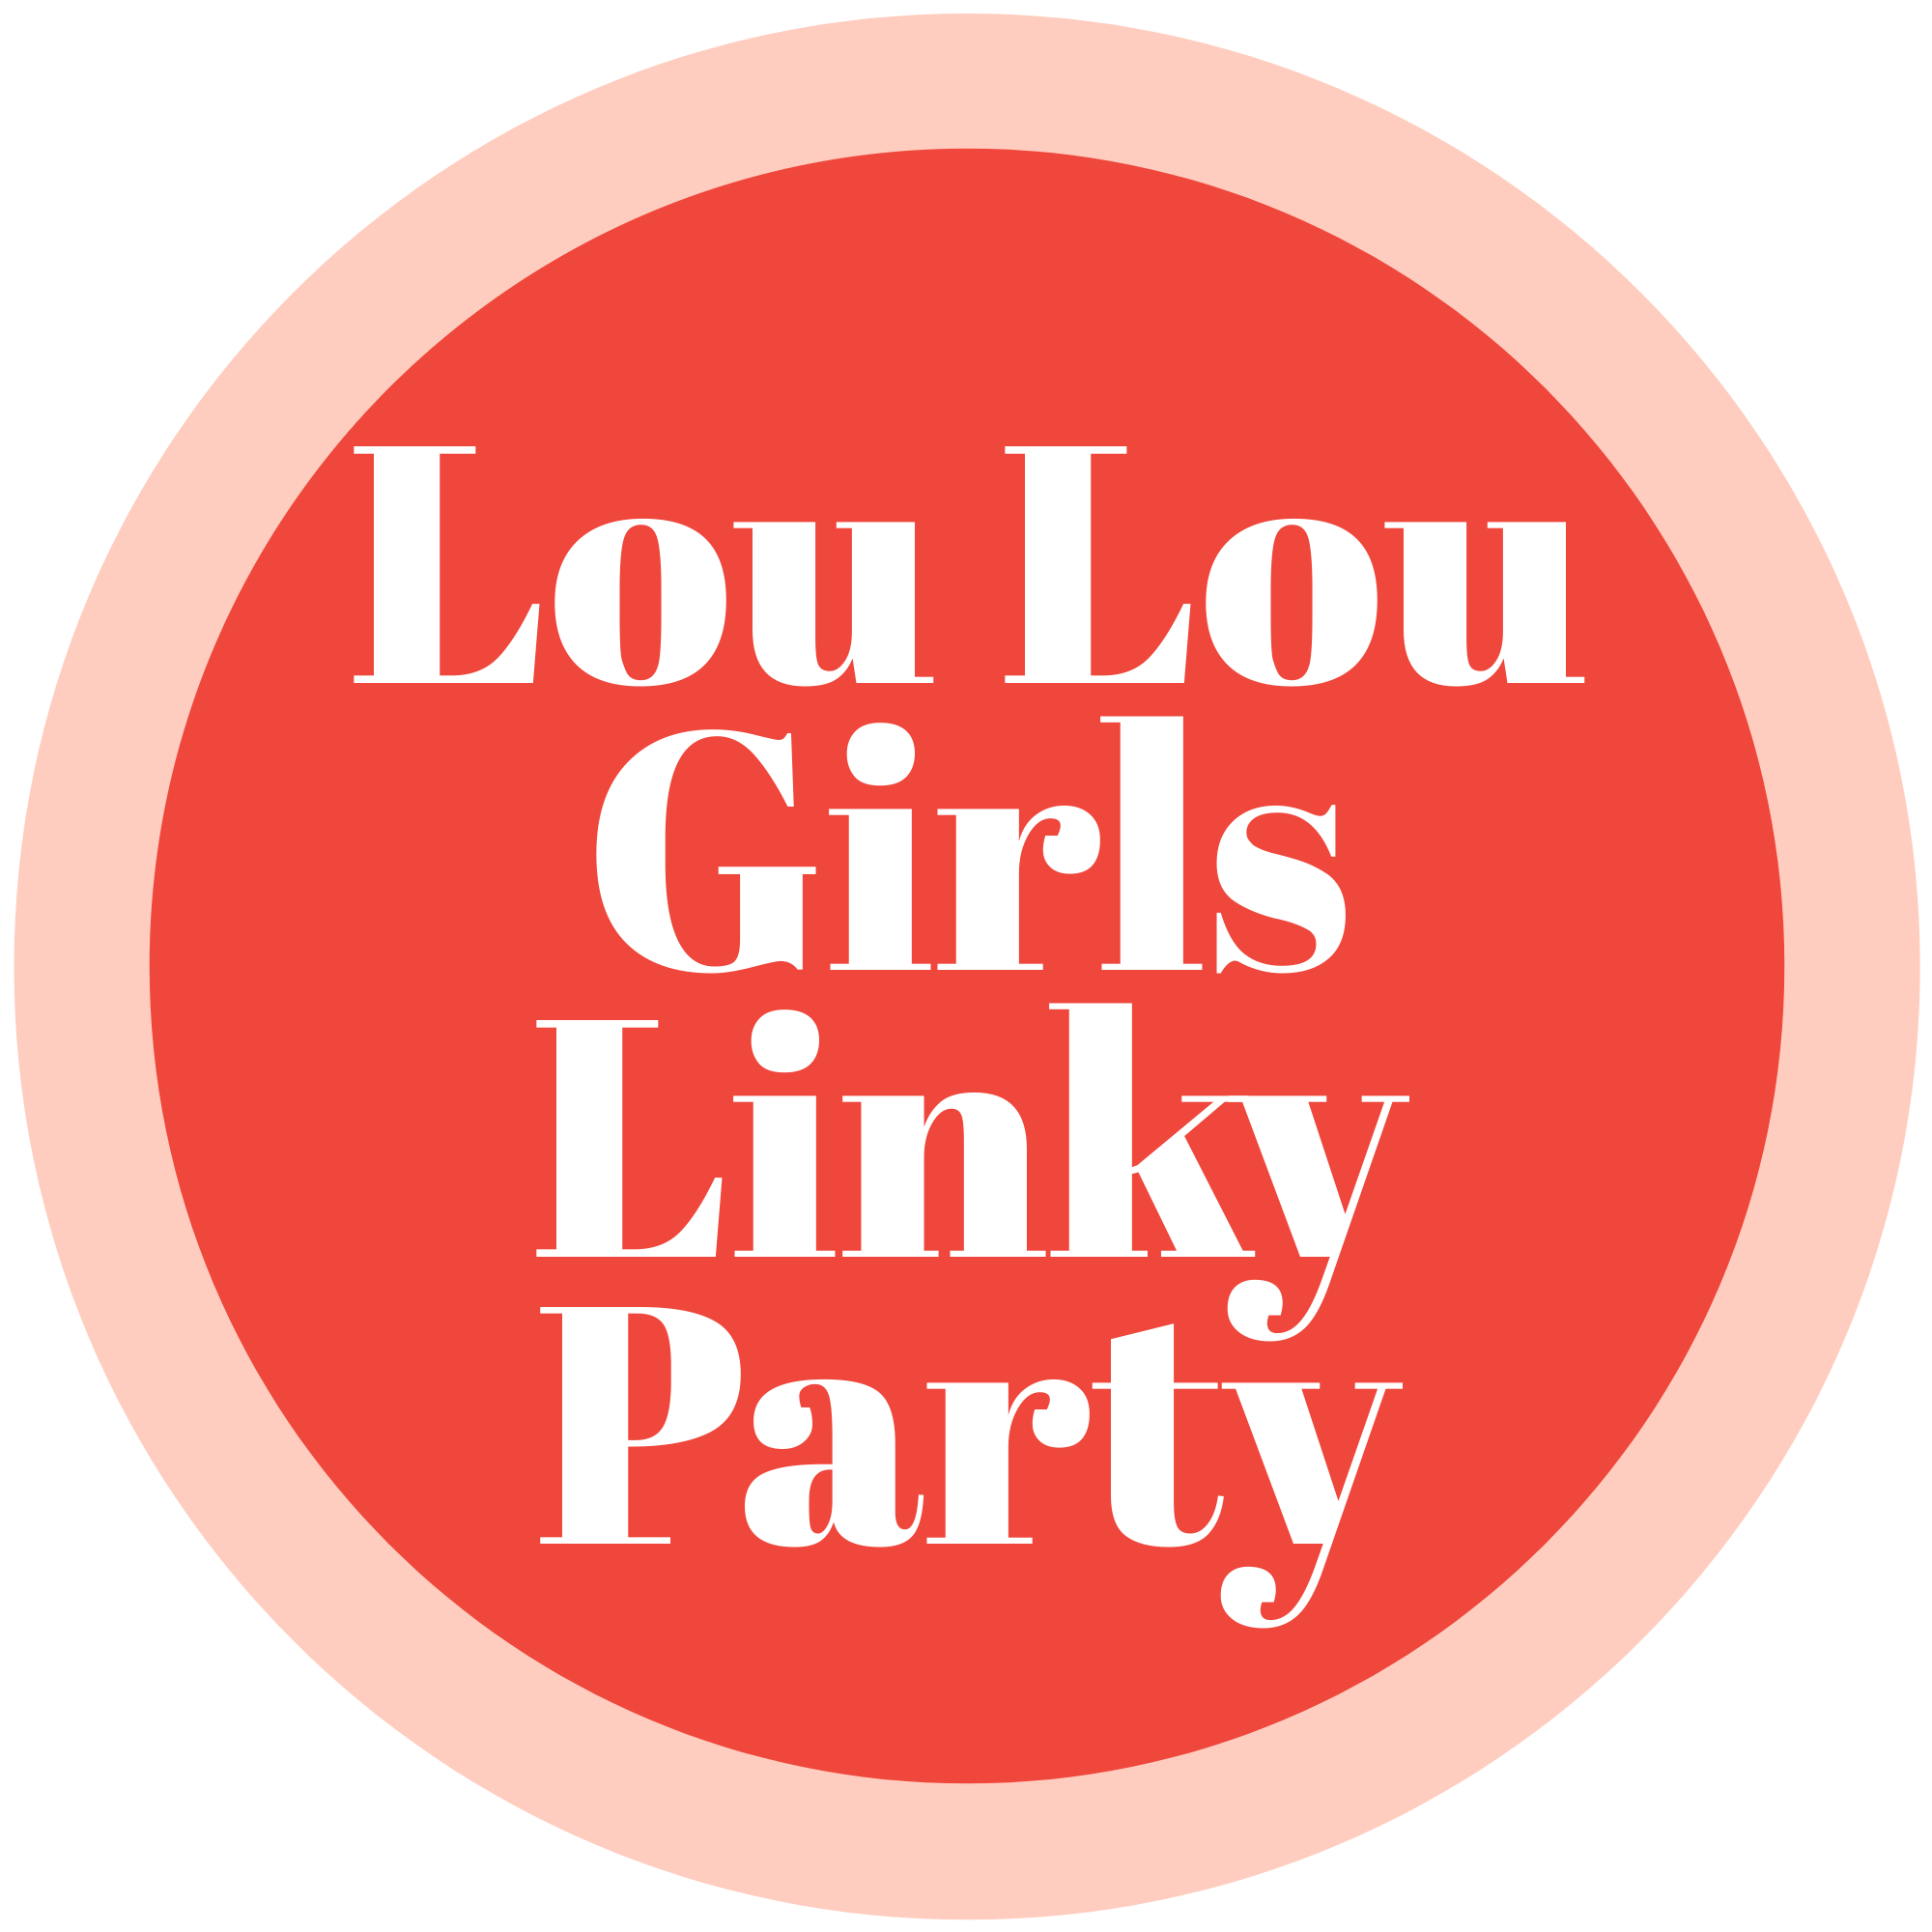 LOU LOU GIRLS FABULOUS PARTY 494